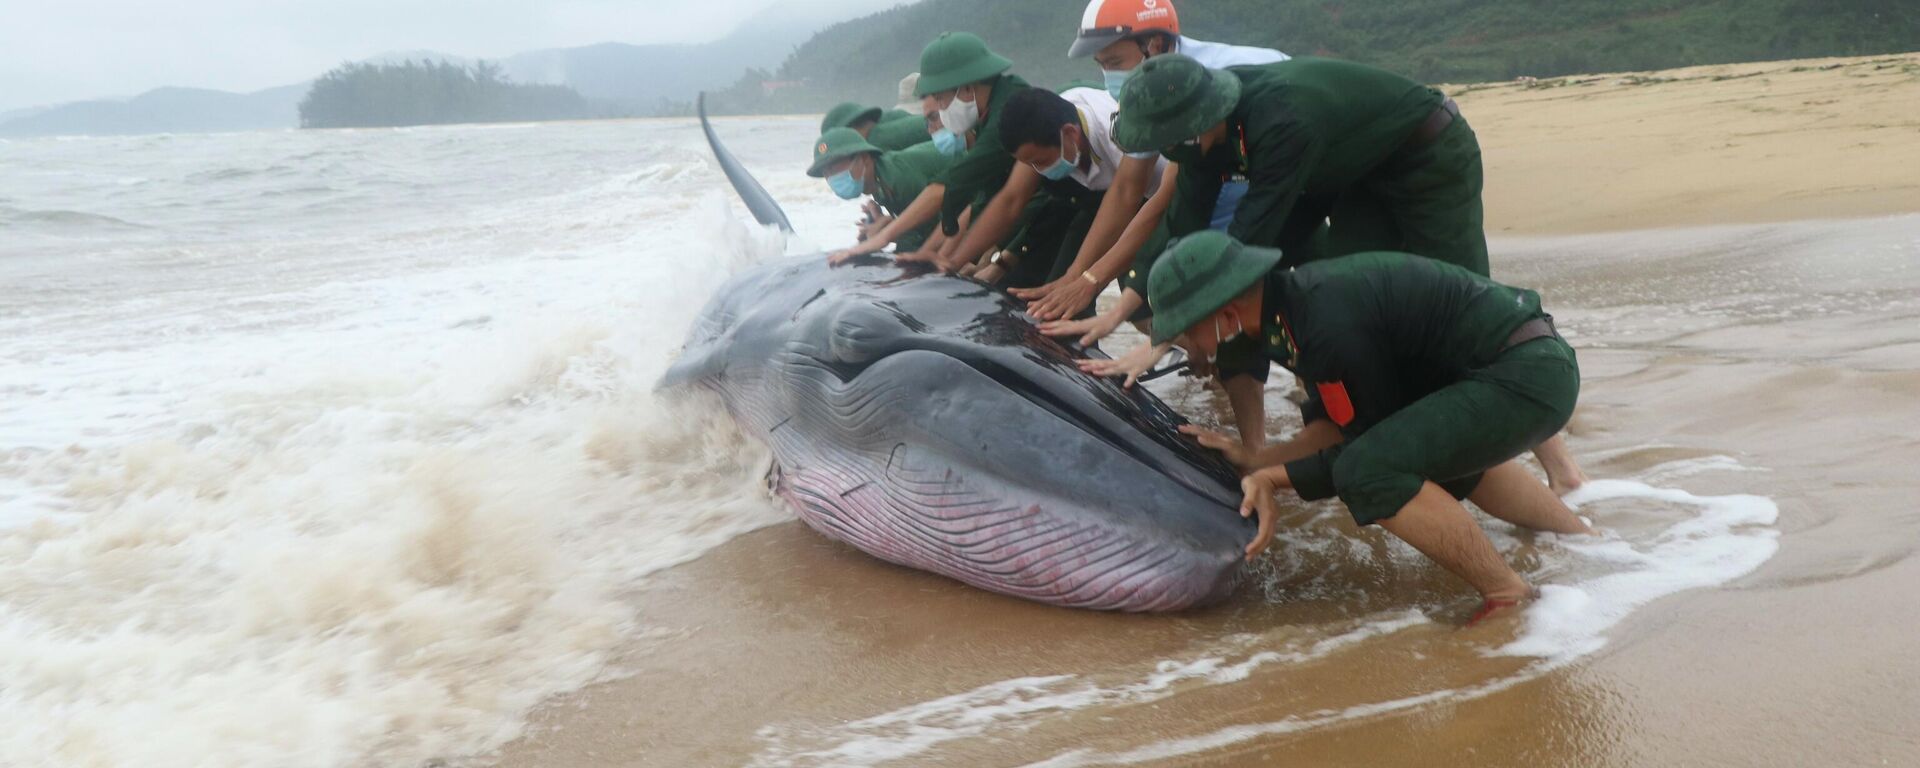 Cứu hộ thành công cá voi nặng khoảng 3 tấn dạt vào bờ biển Thừa Thiên-Huế - Sputnik Việt Nam, 1920, 18.10.2021